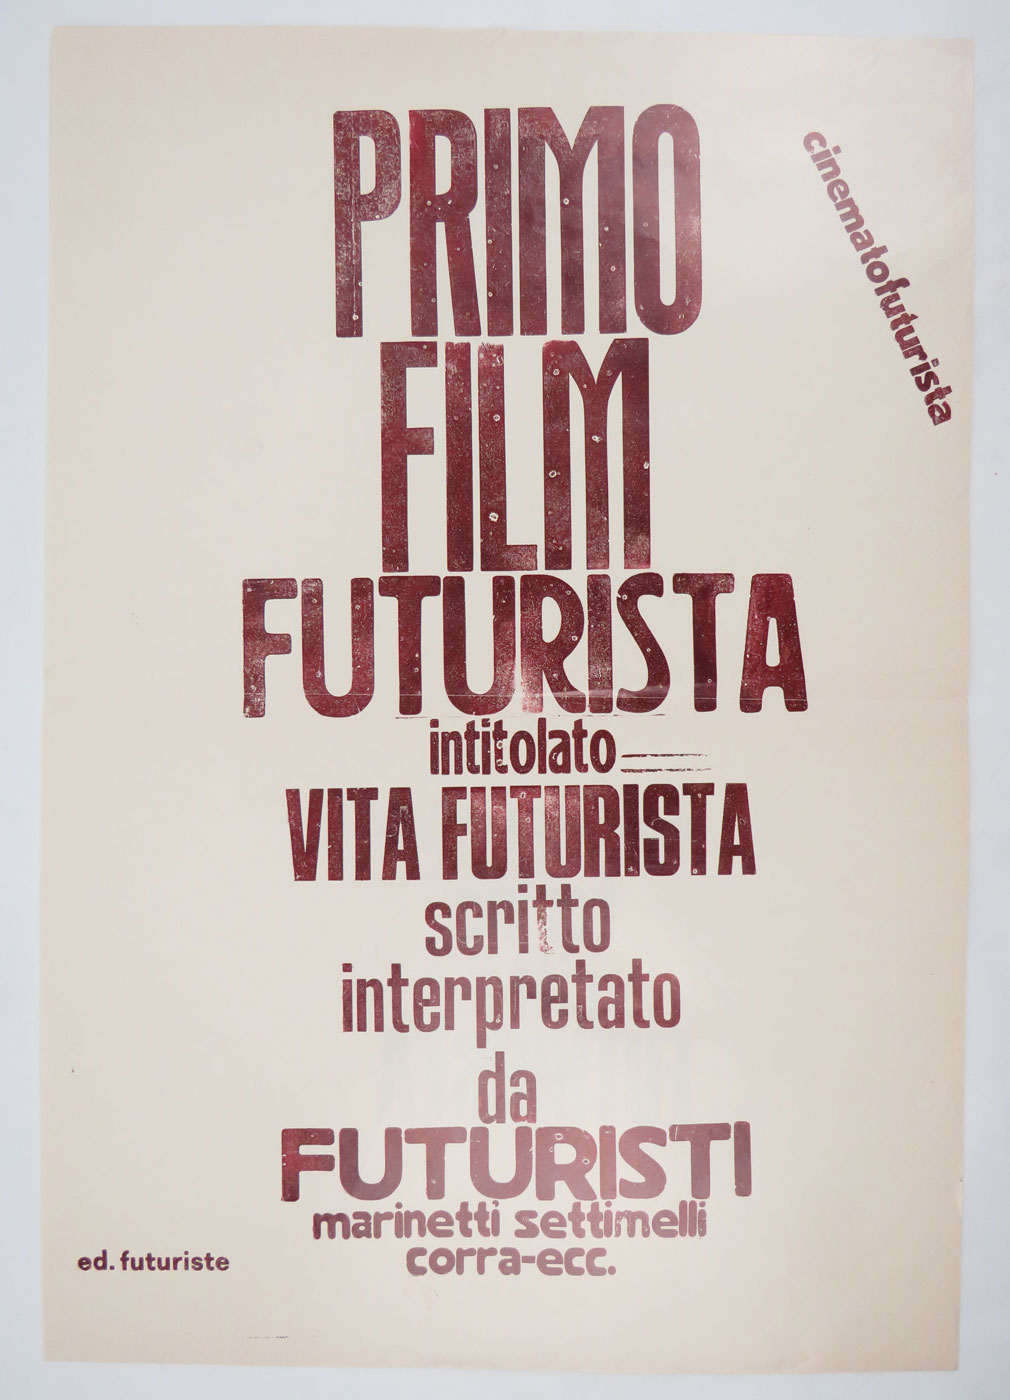 primo film futurista intitolato vita futurista scritto e interpretato da futuristi marinetti settimelli corra-ecc. [variante magenta]